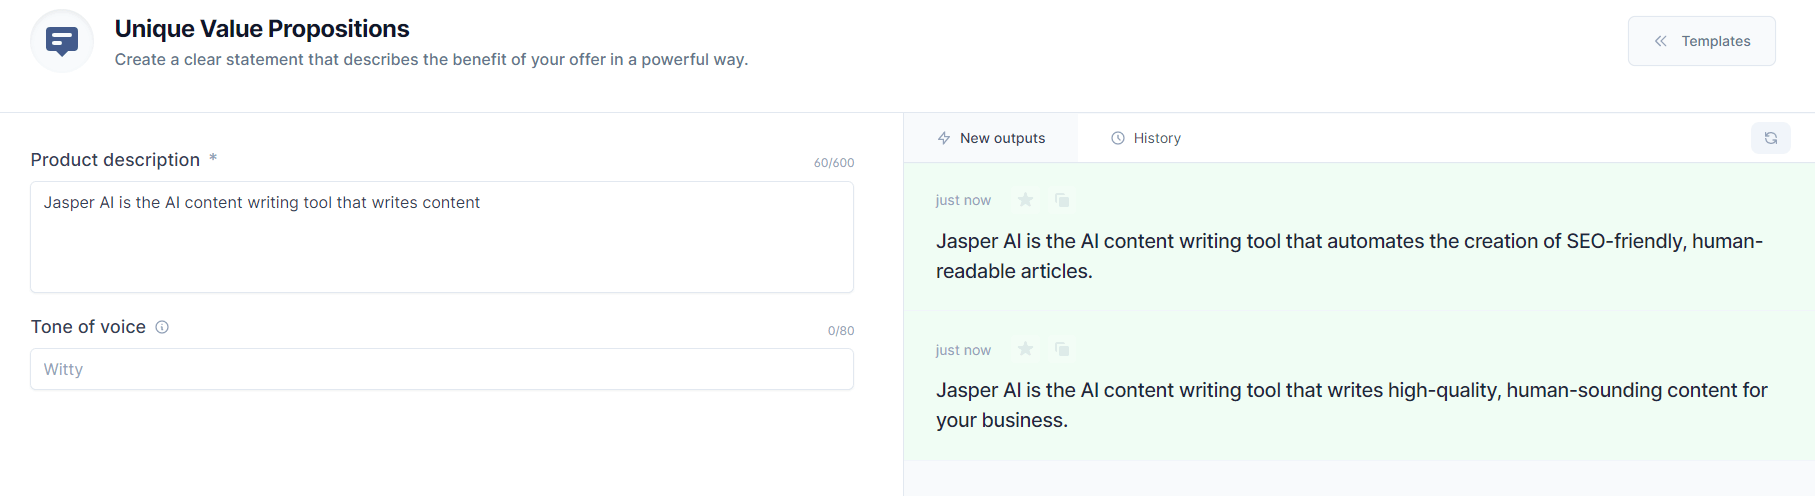 Jasper AI Unique Value Proposition